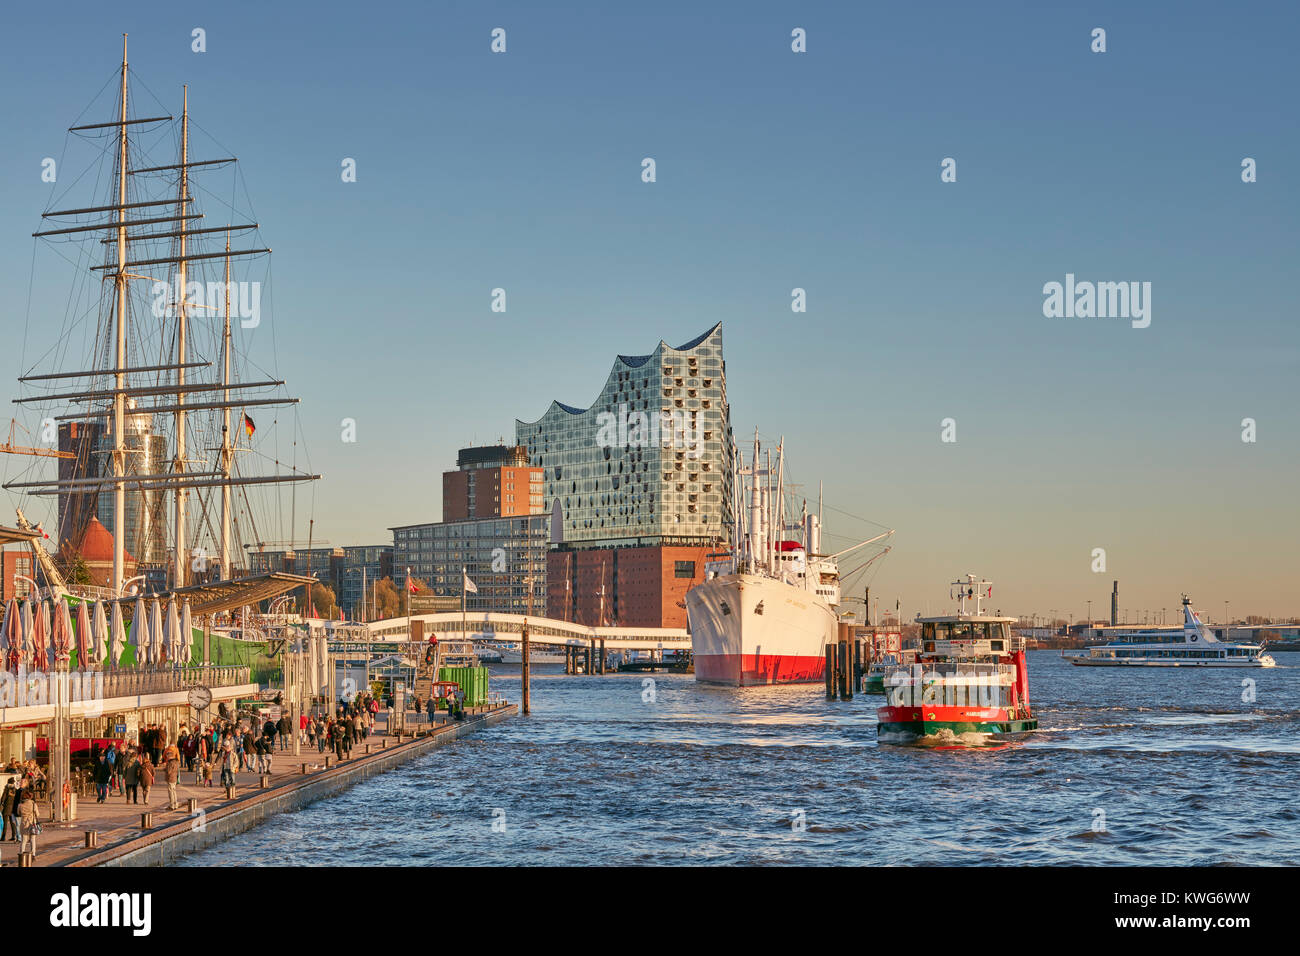 Elbphilharmonie, konzertsaal an der Elbe, HafenCity, Hamburg, Deutschland. Mit historischen Schiffen "Rickmer Rickmers" und "Cap San Diego" Stockfoto